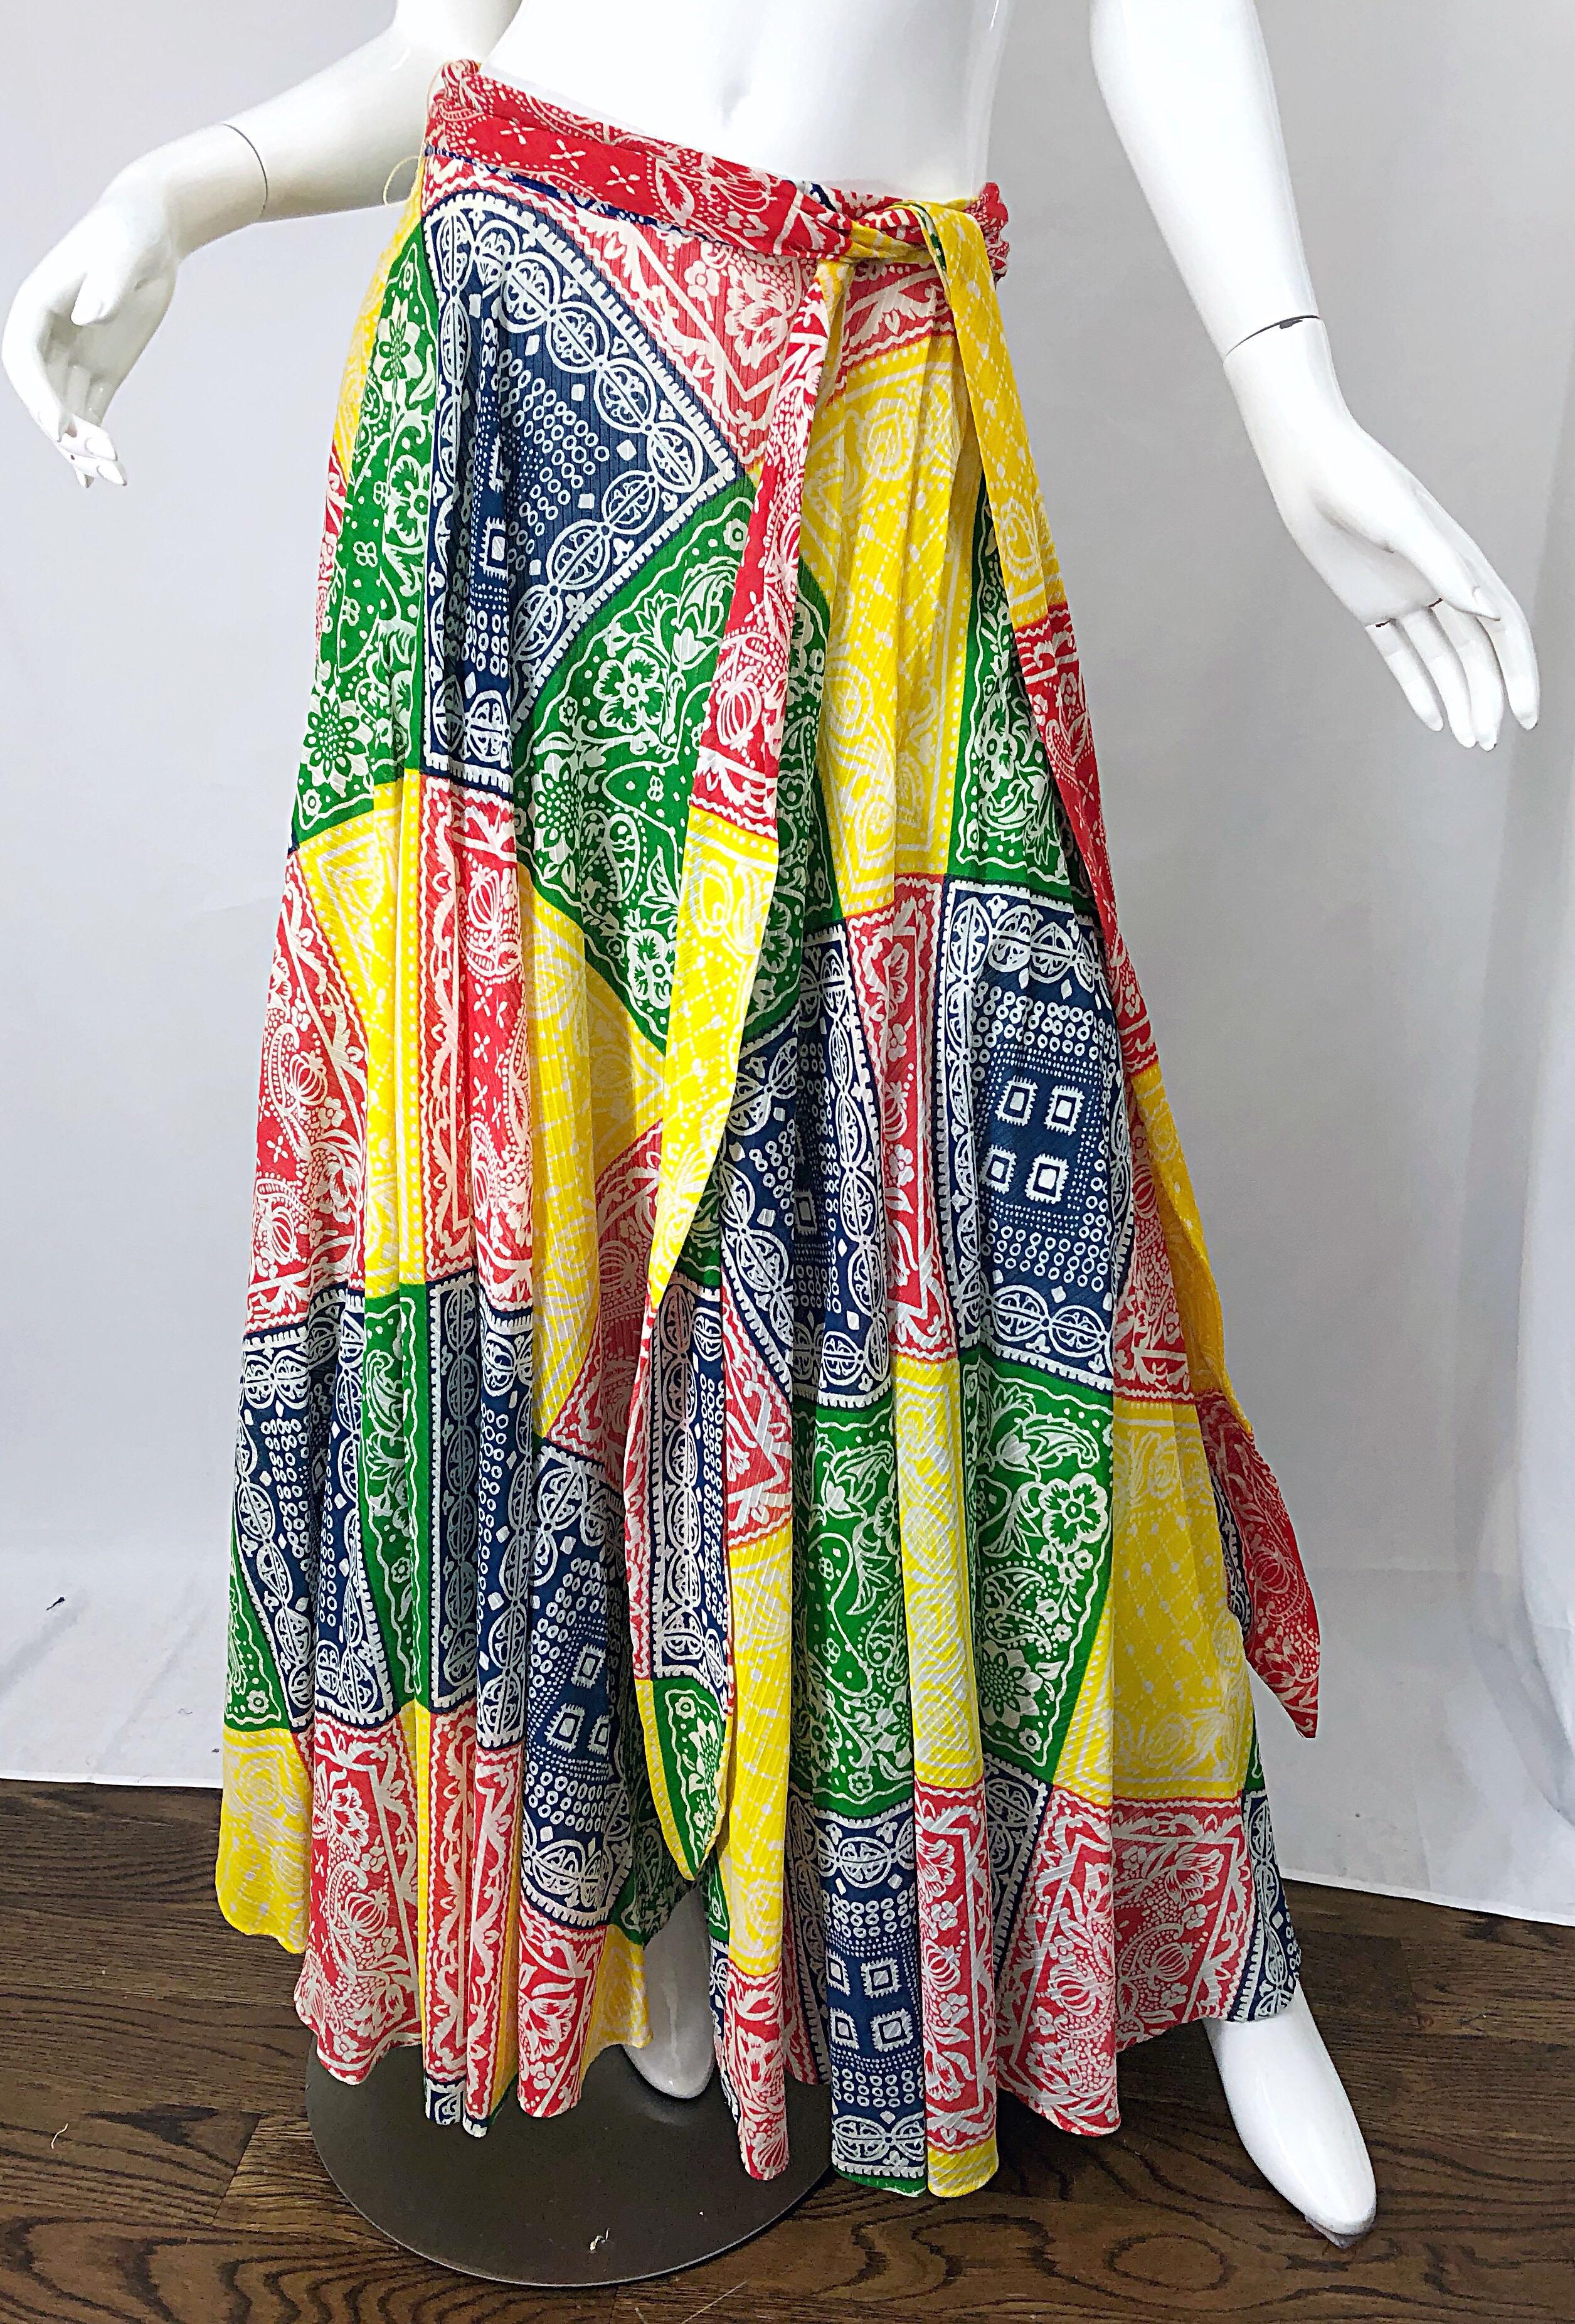 Women's 1970s Joseph Magnin Bandana Multi Color Print Boho Vintage 70s Cotton Maxi Skirt